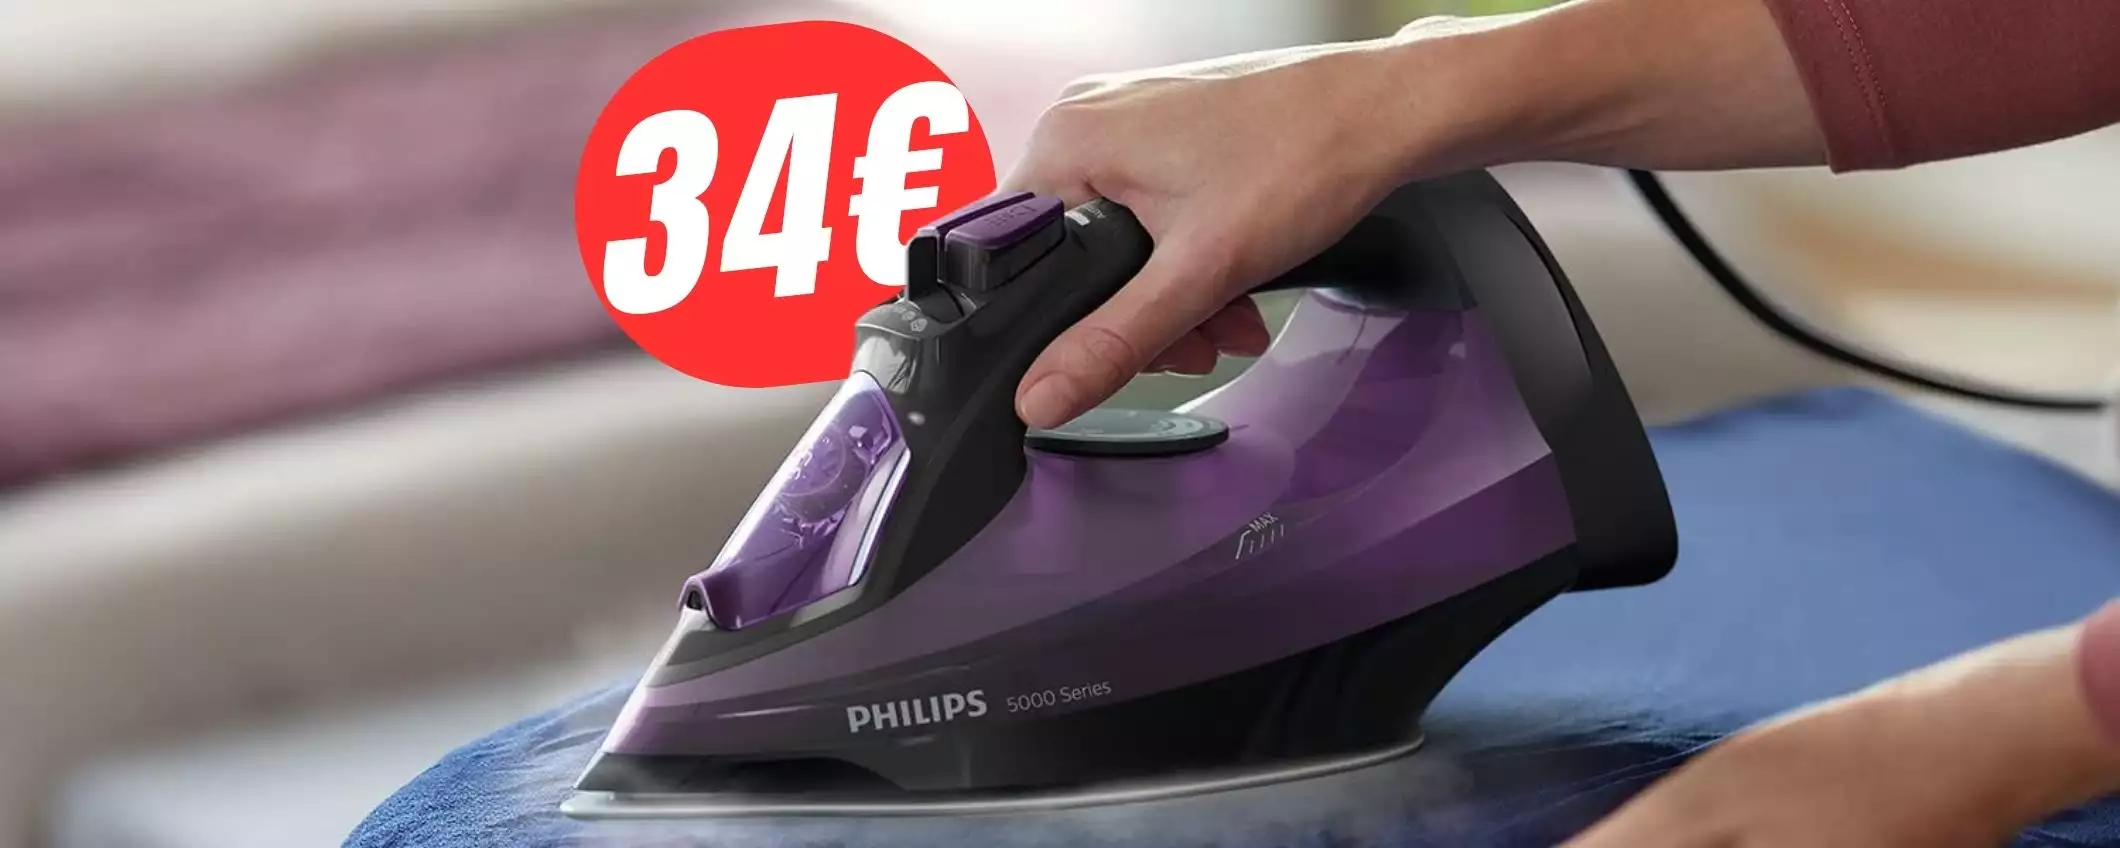 FERRO da STIRO Philips a -30€ su Amazon: ha una potenza di 2400W!